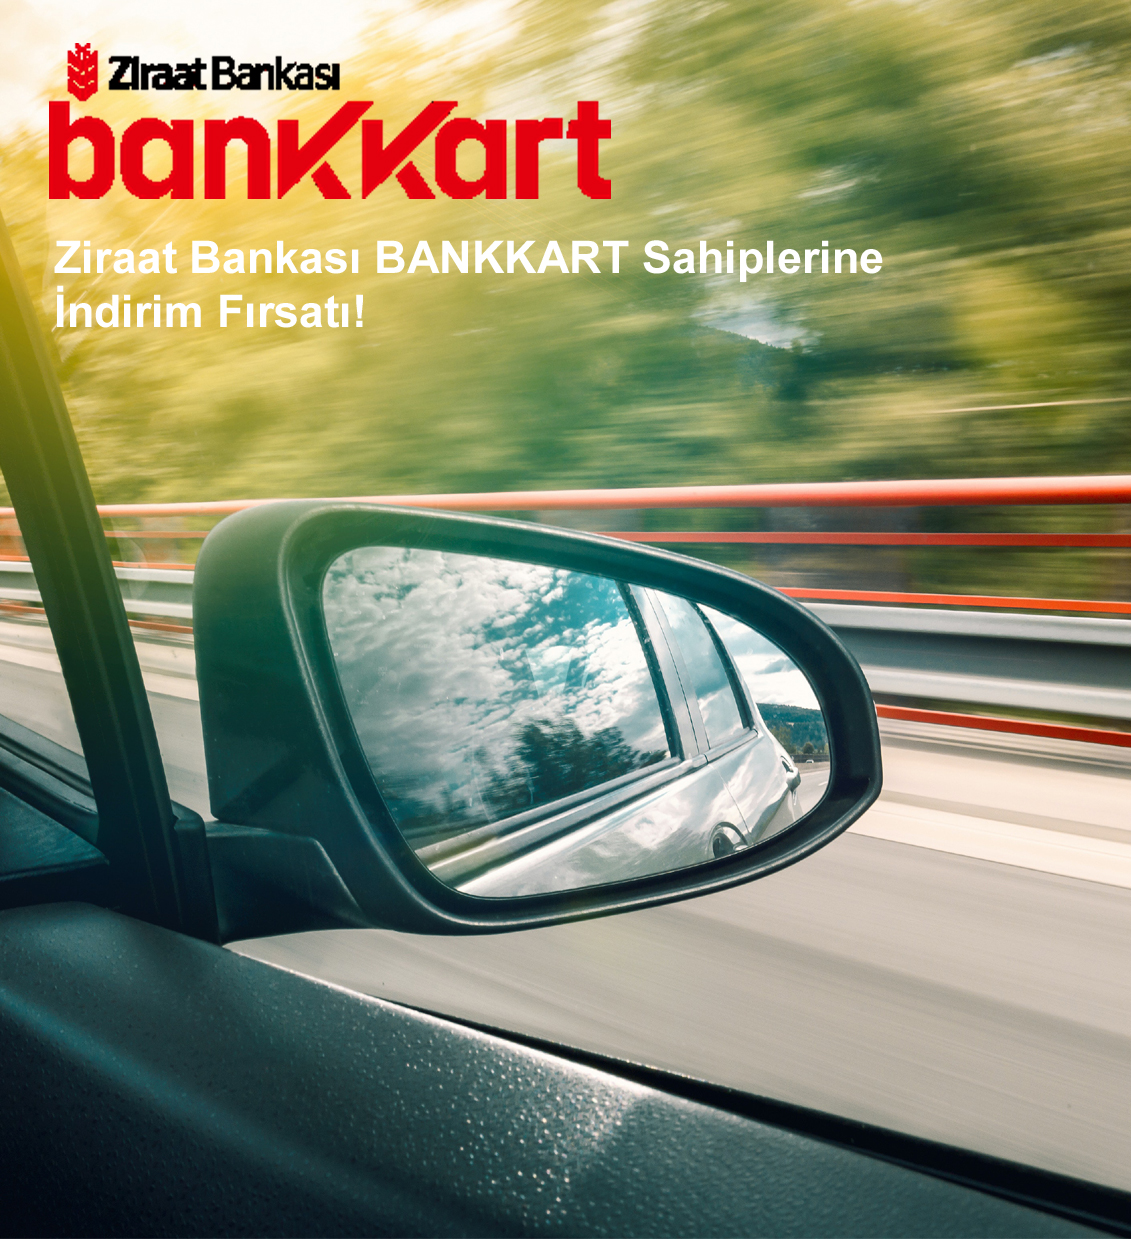 Discount Opportunity for Ziraat Bank BANKKART Holders!